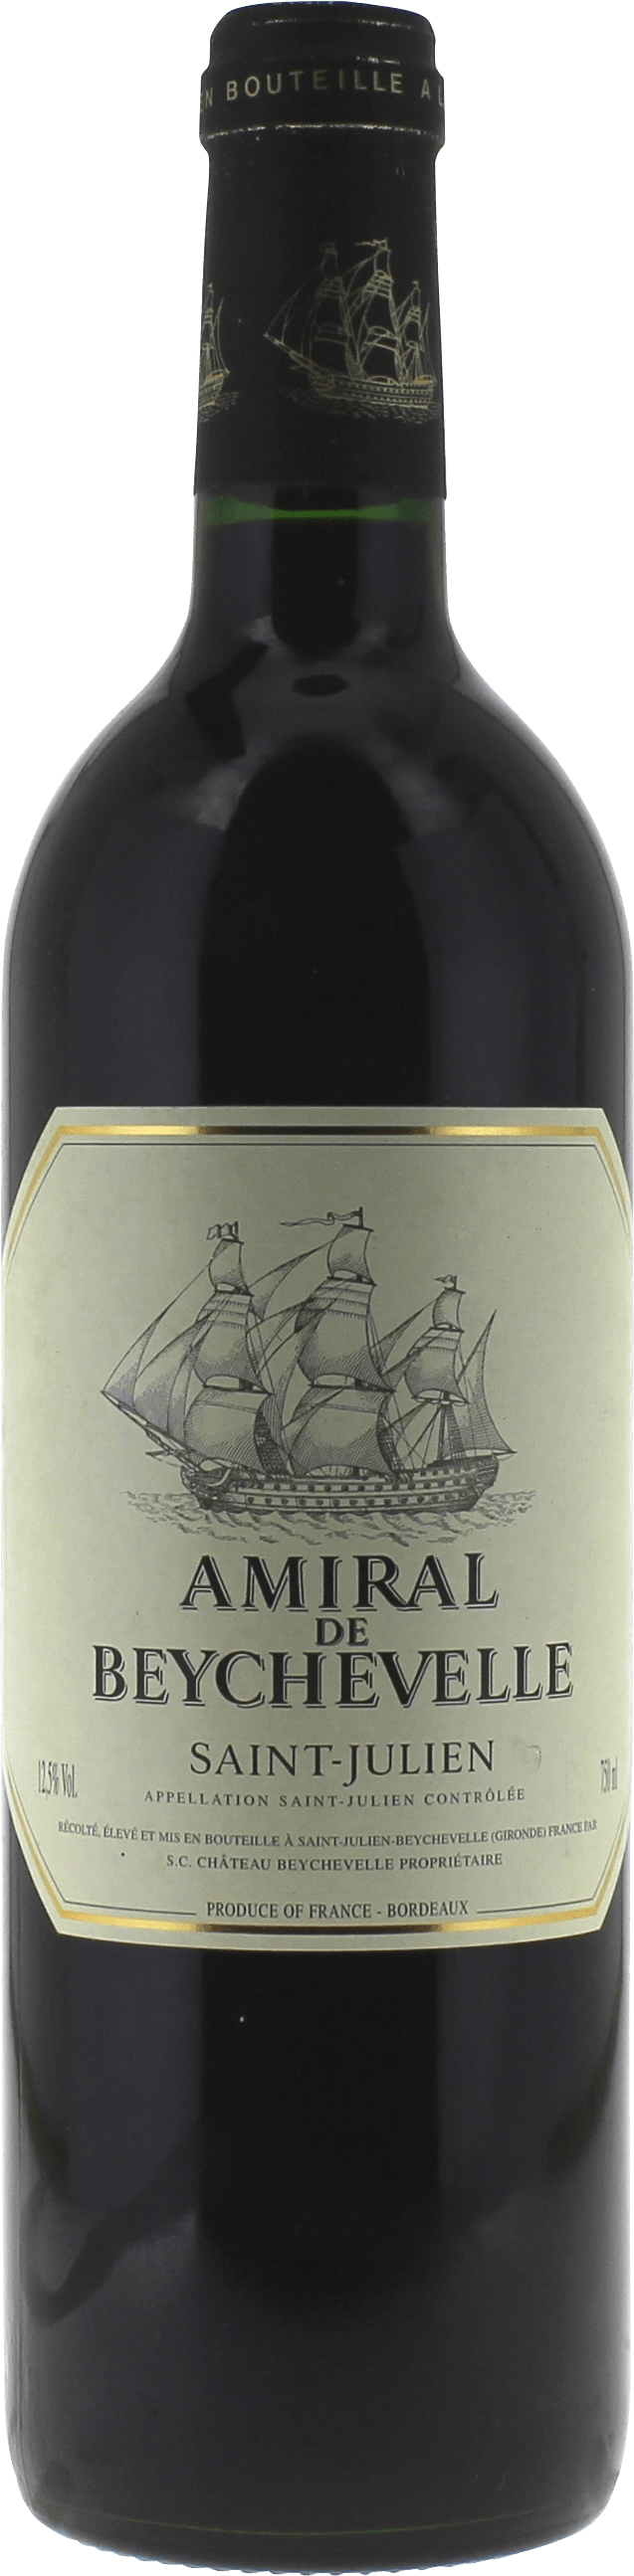 Amiral de beychevelle 1998 2me vin de BEYCHEVELLE Saint-Julien, Bordeaux rouge